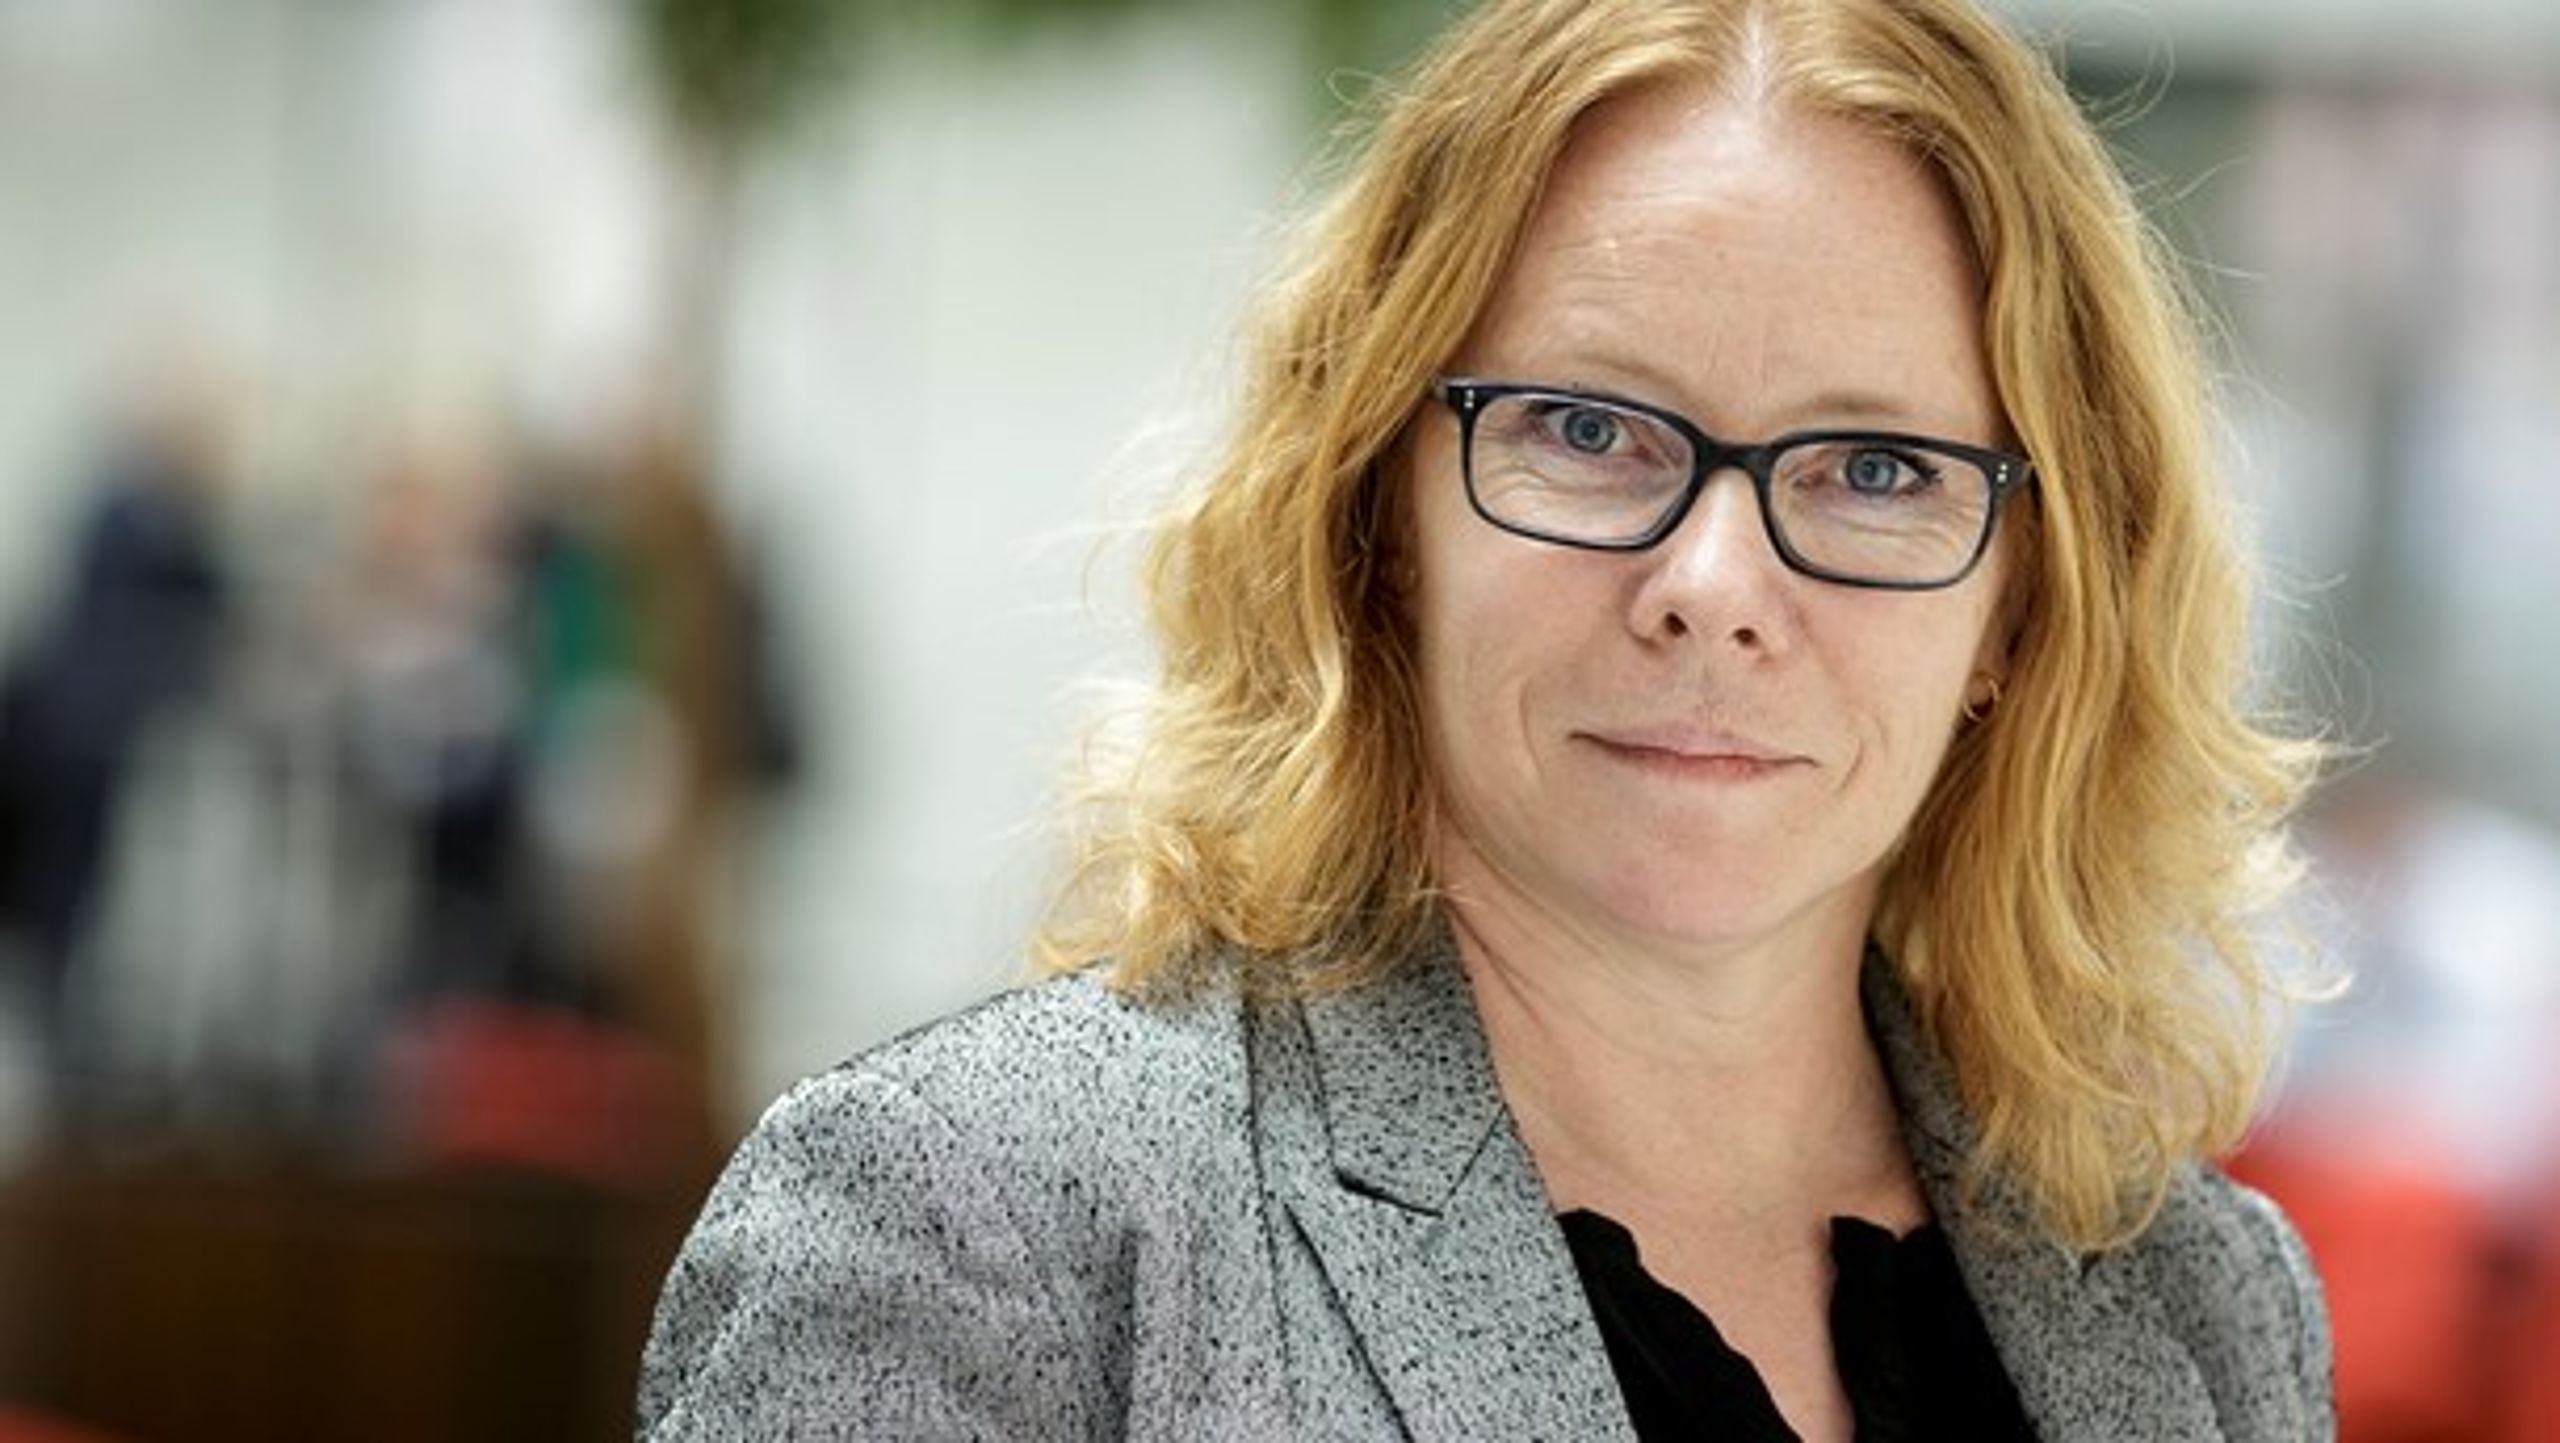 Vores håb er, at danske virksomheder i 2030 er verdensførende inden for cirkulære forretningsmodeller, skriver Karin Klitgaard fra DI.